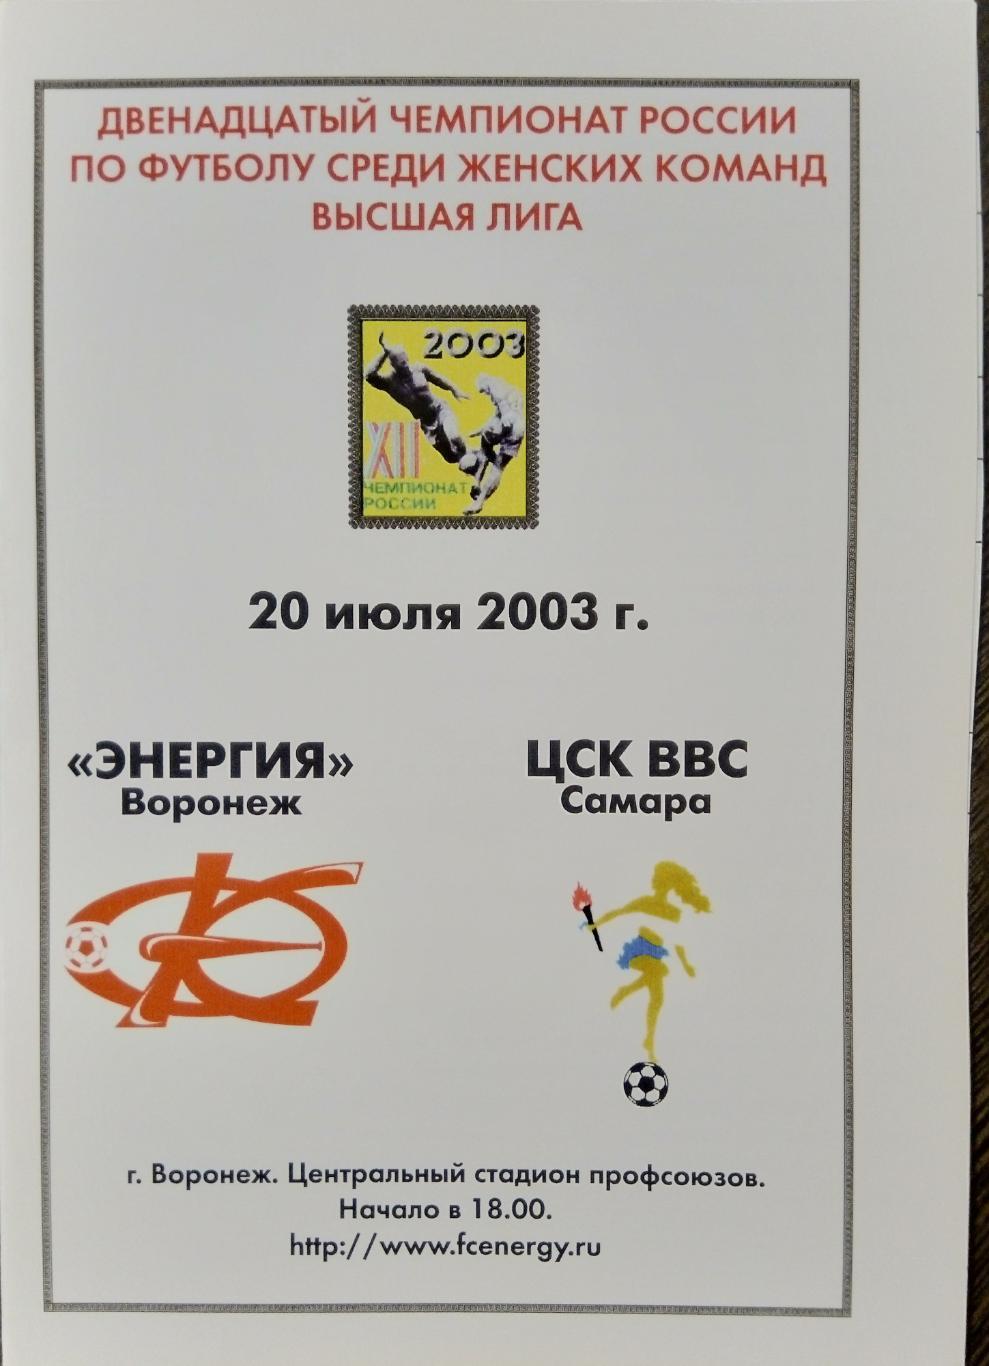 Женщины: Энергия Воронеж - ЦСК ВВС Самара - 2003